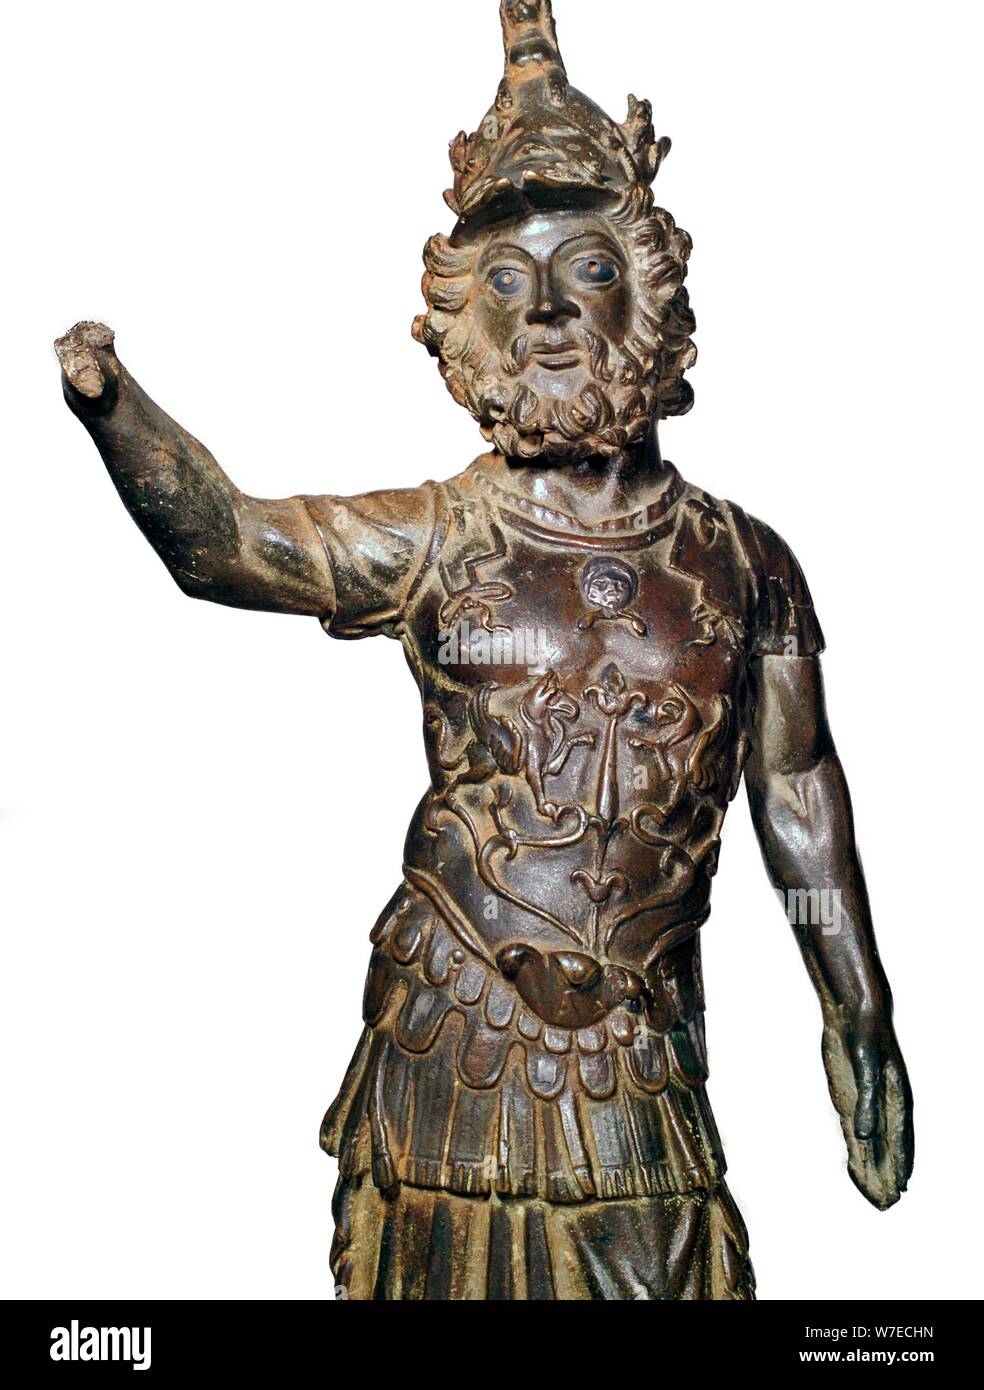 Estatuilla De Bronce Romano Del Dios Marte Del Siglo Ii A Artista Desconocido Fotografía De